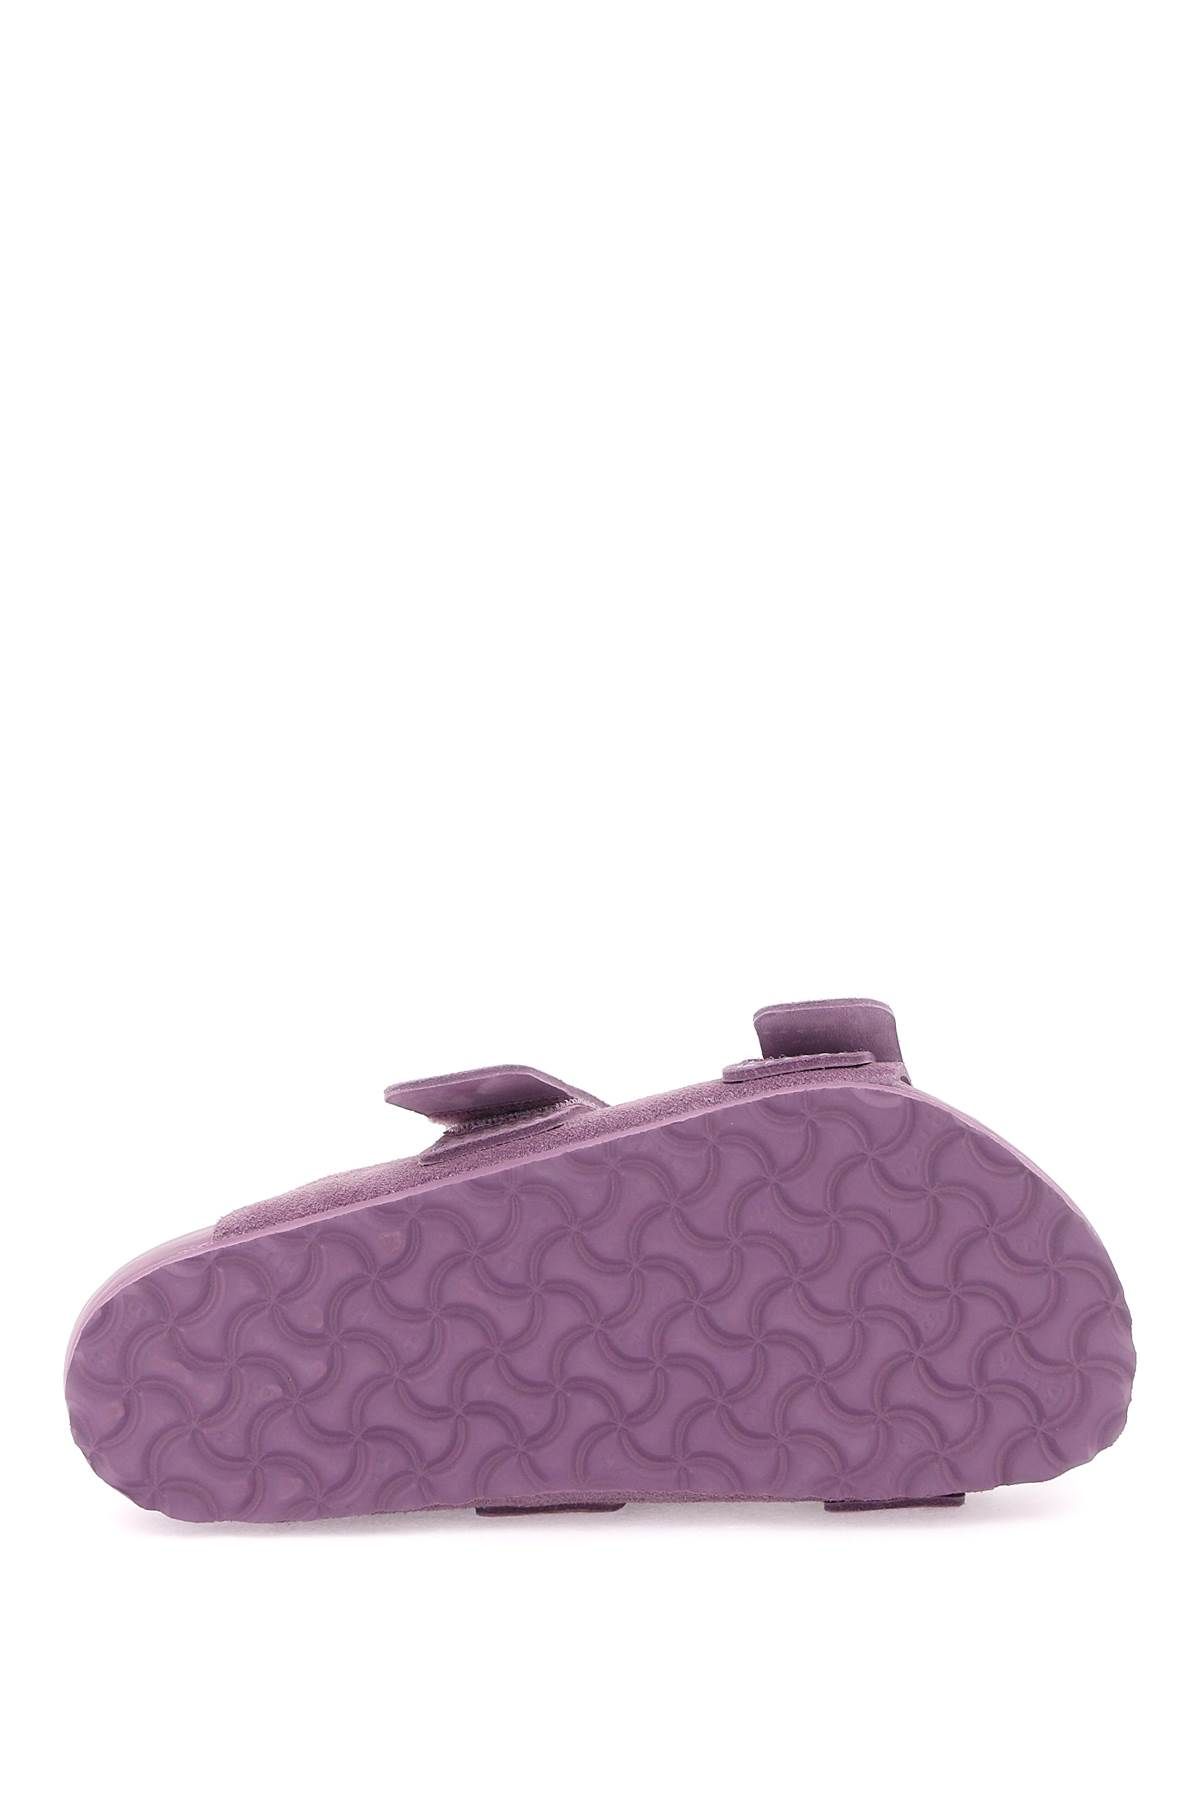 Shop Birkenstock X Tekla Uji Slides In Purple